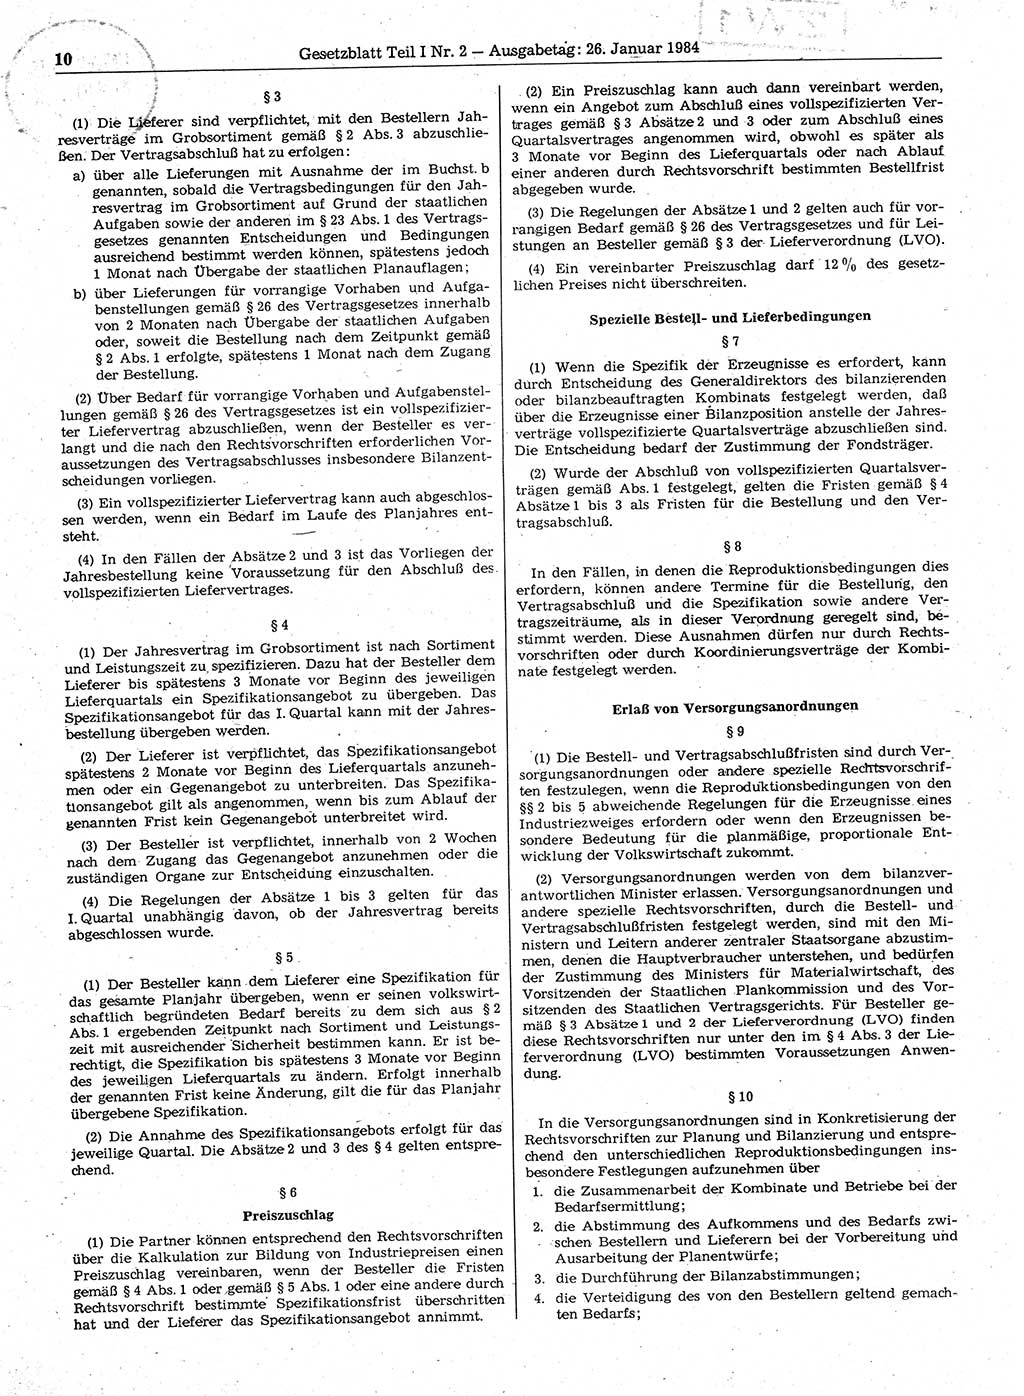 Gesetzblatt (GBl.) der Deutschen Demokratischen Republik (DDR) Teil Ⅰ 1984, Seite 10 (GBl. DDR Ⅰ 1984, S. 10)